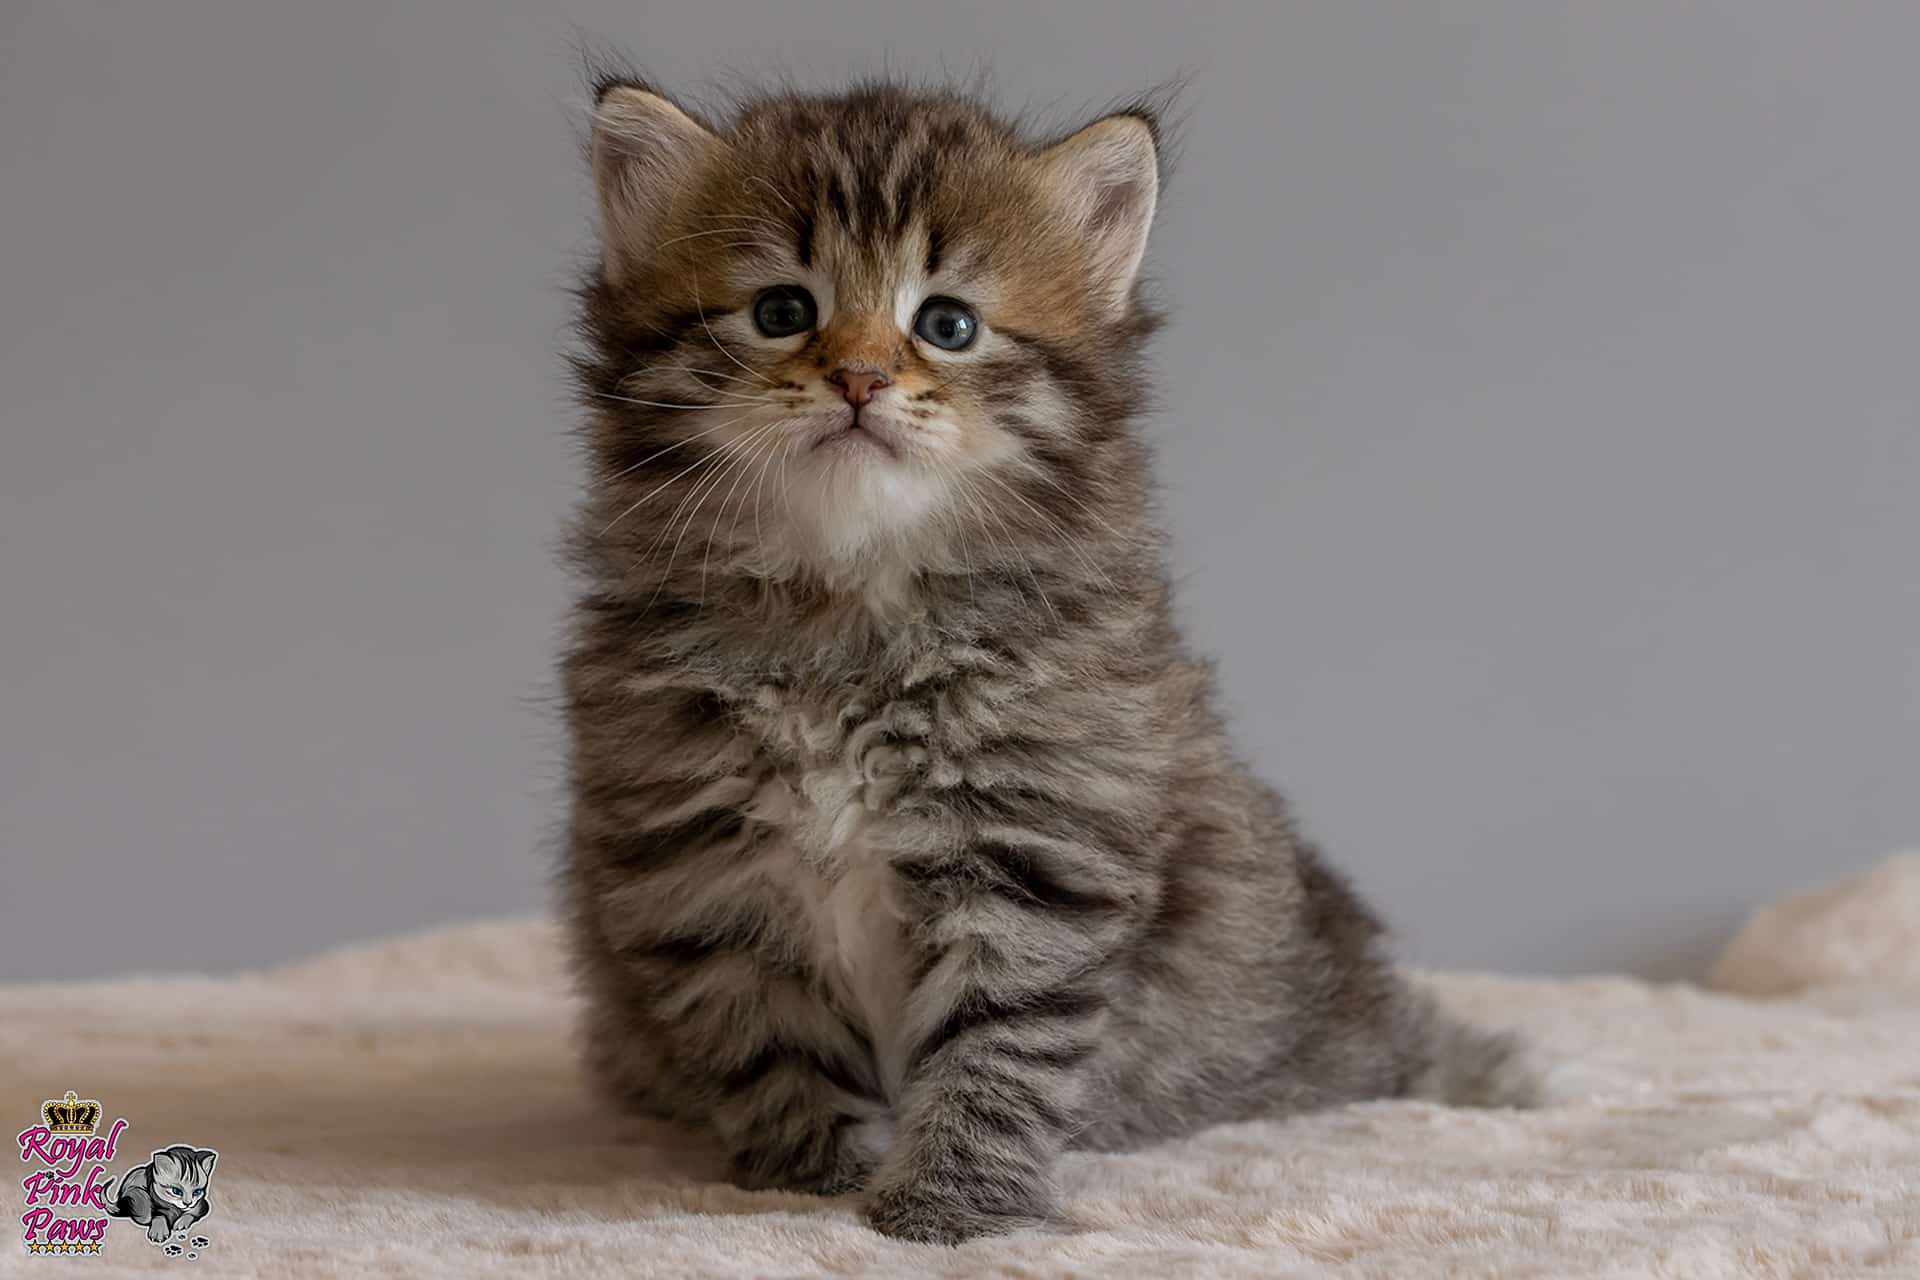 Sibirische Katze - Nikita Royal Pink Paws